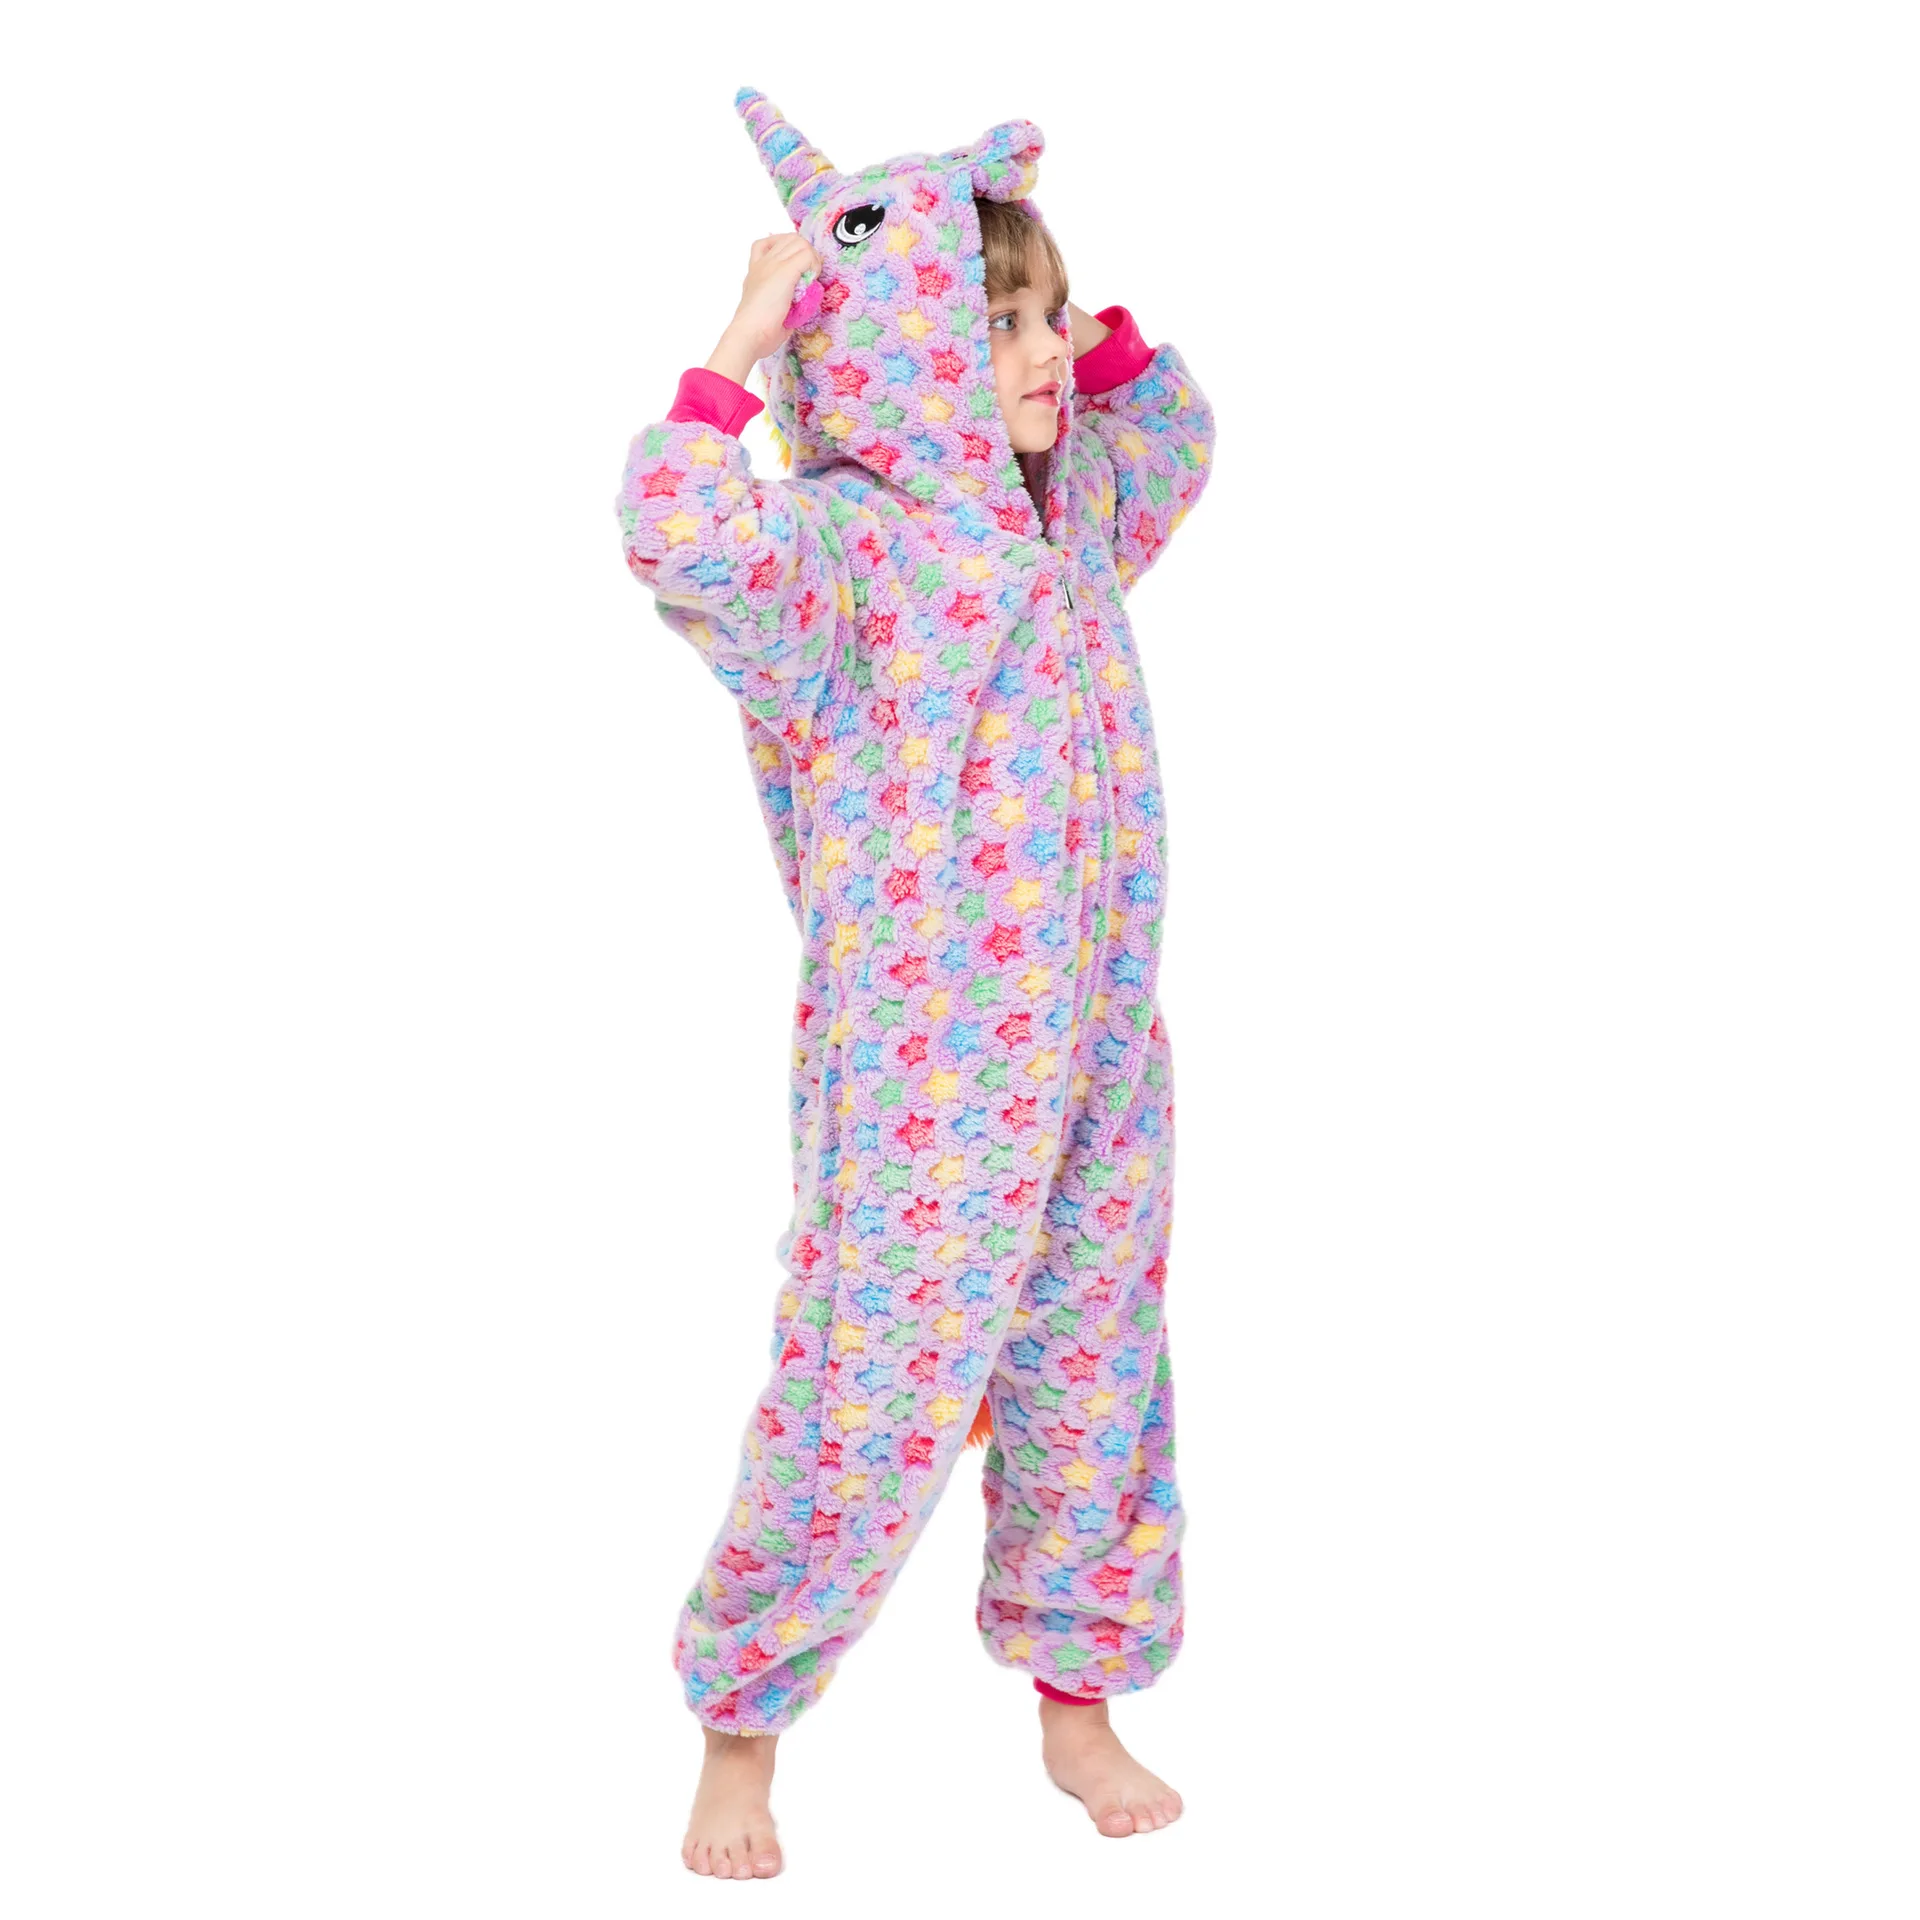 Кигуруми Зимние пижамы для мальчиков и девочек, комбинезон с рисунком единорога, аниме, животных, детская одежда для сна, фланелевый теплый комбинезон, детские пижамы